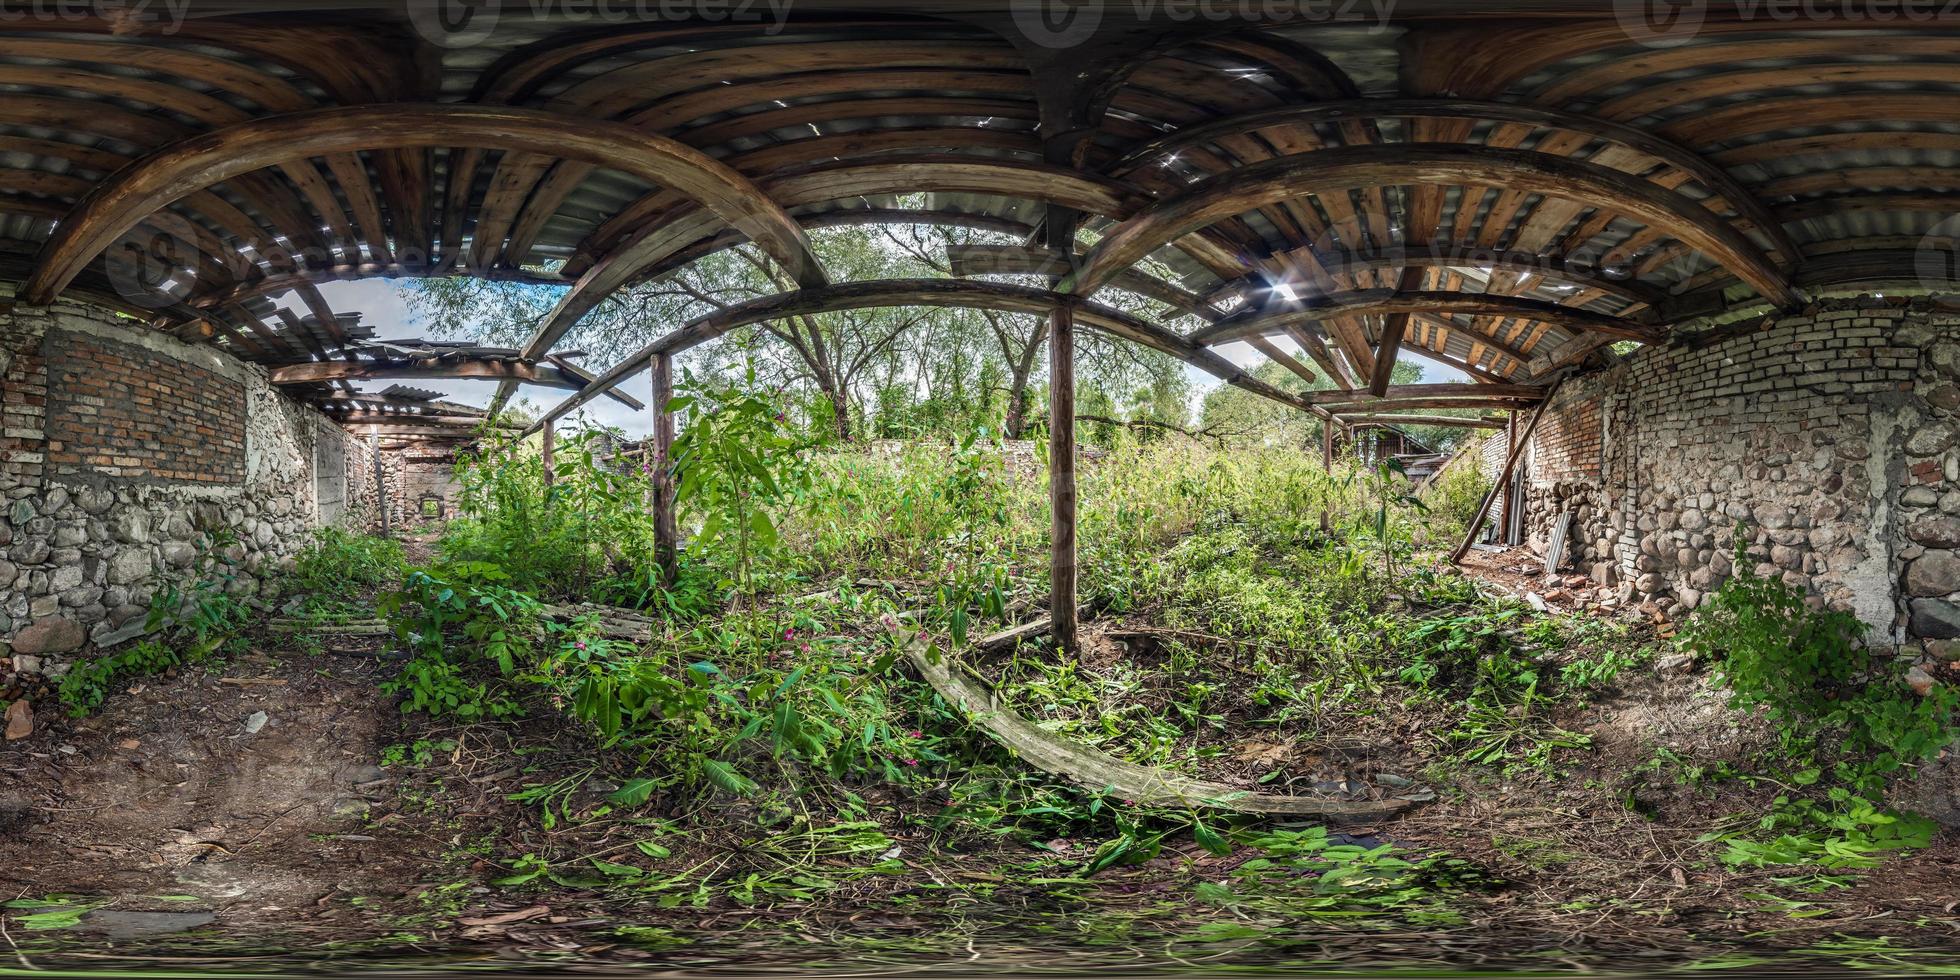 Panorama de 360 hdr dentro de um hangar de madeira arbustivo abandonado em ruínas ou prédio antigo em panorama hdri esférico completo e sem costura em projeção equiretangular, conteúdo de realidade virtual ar vr foto